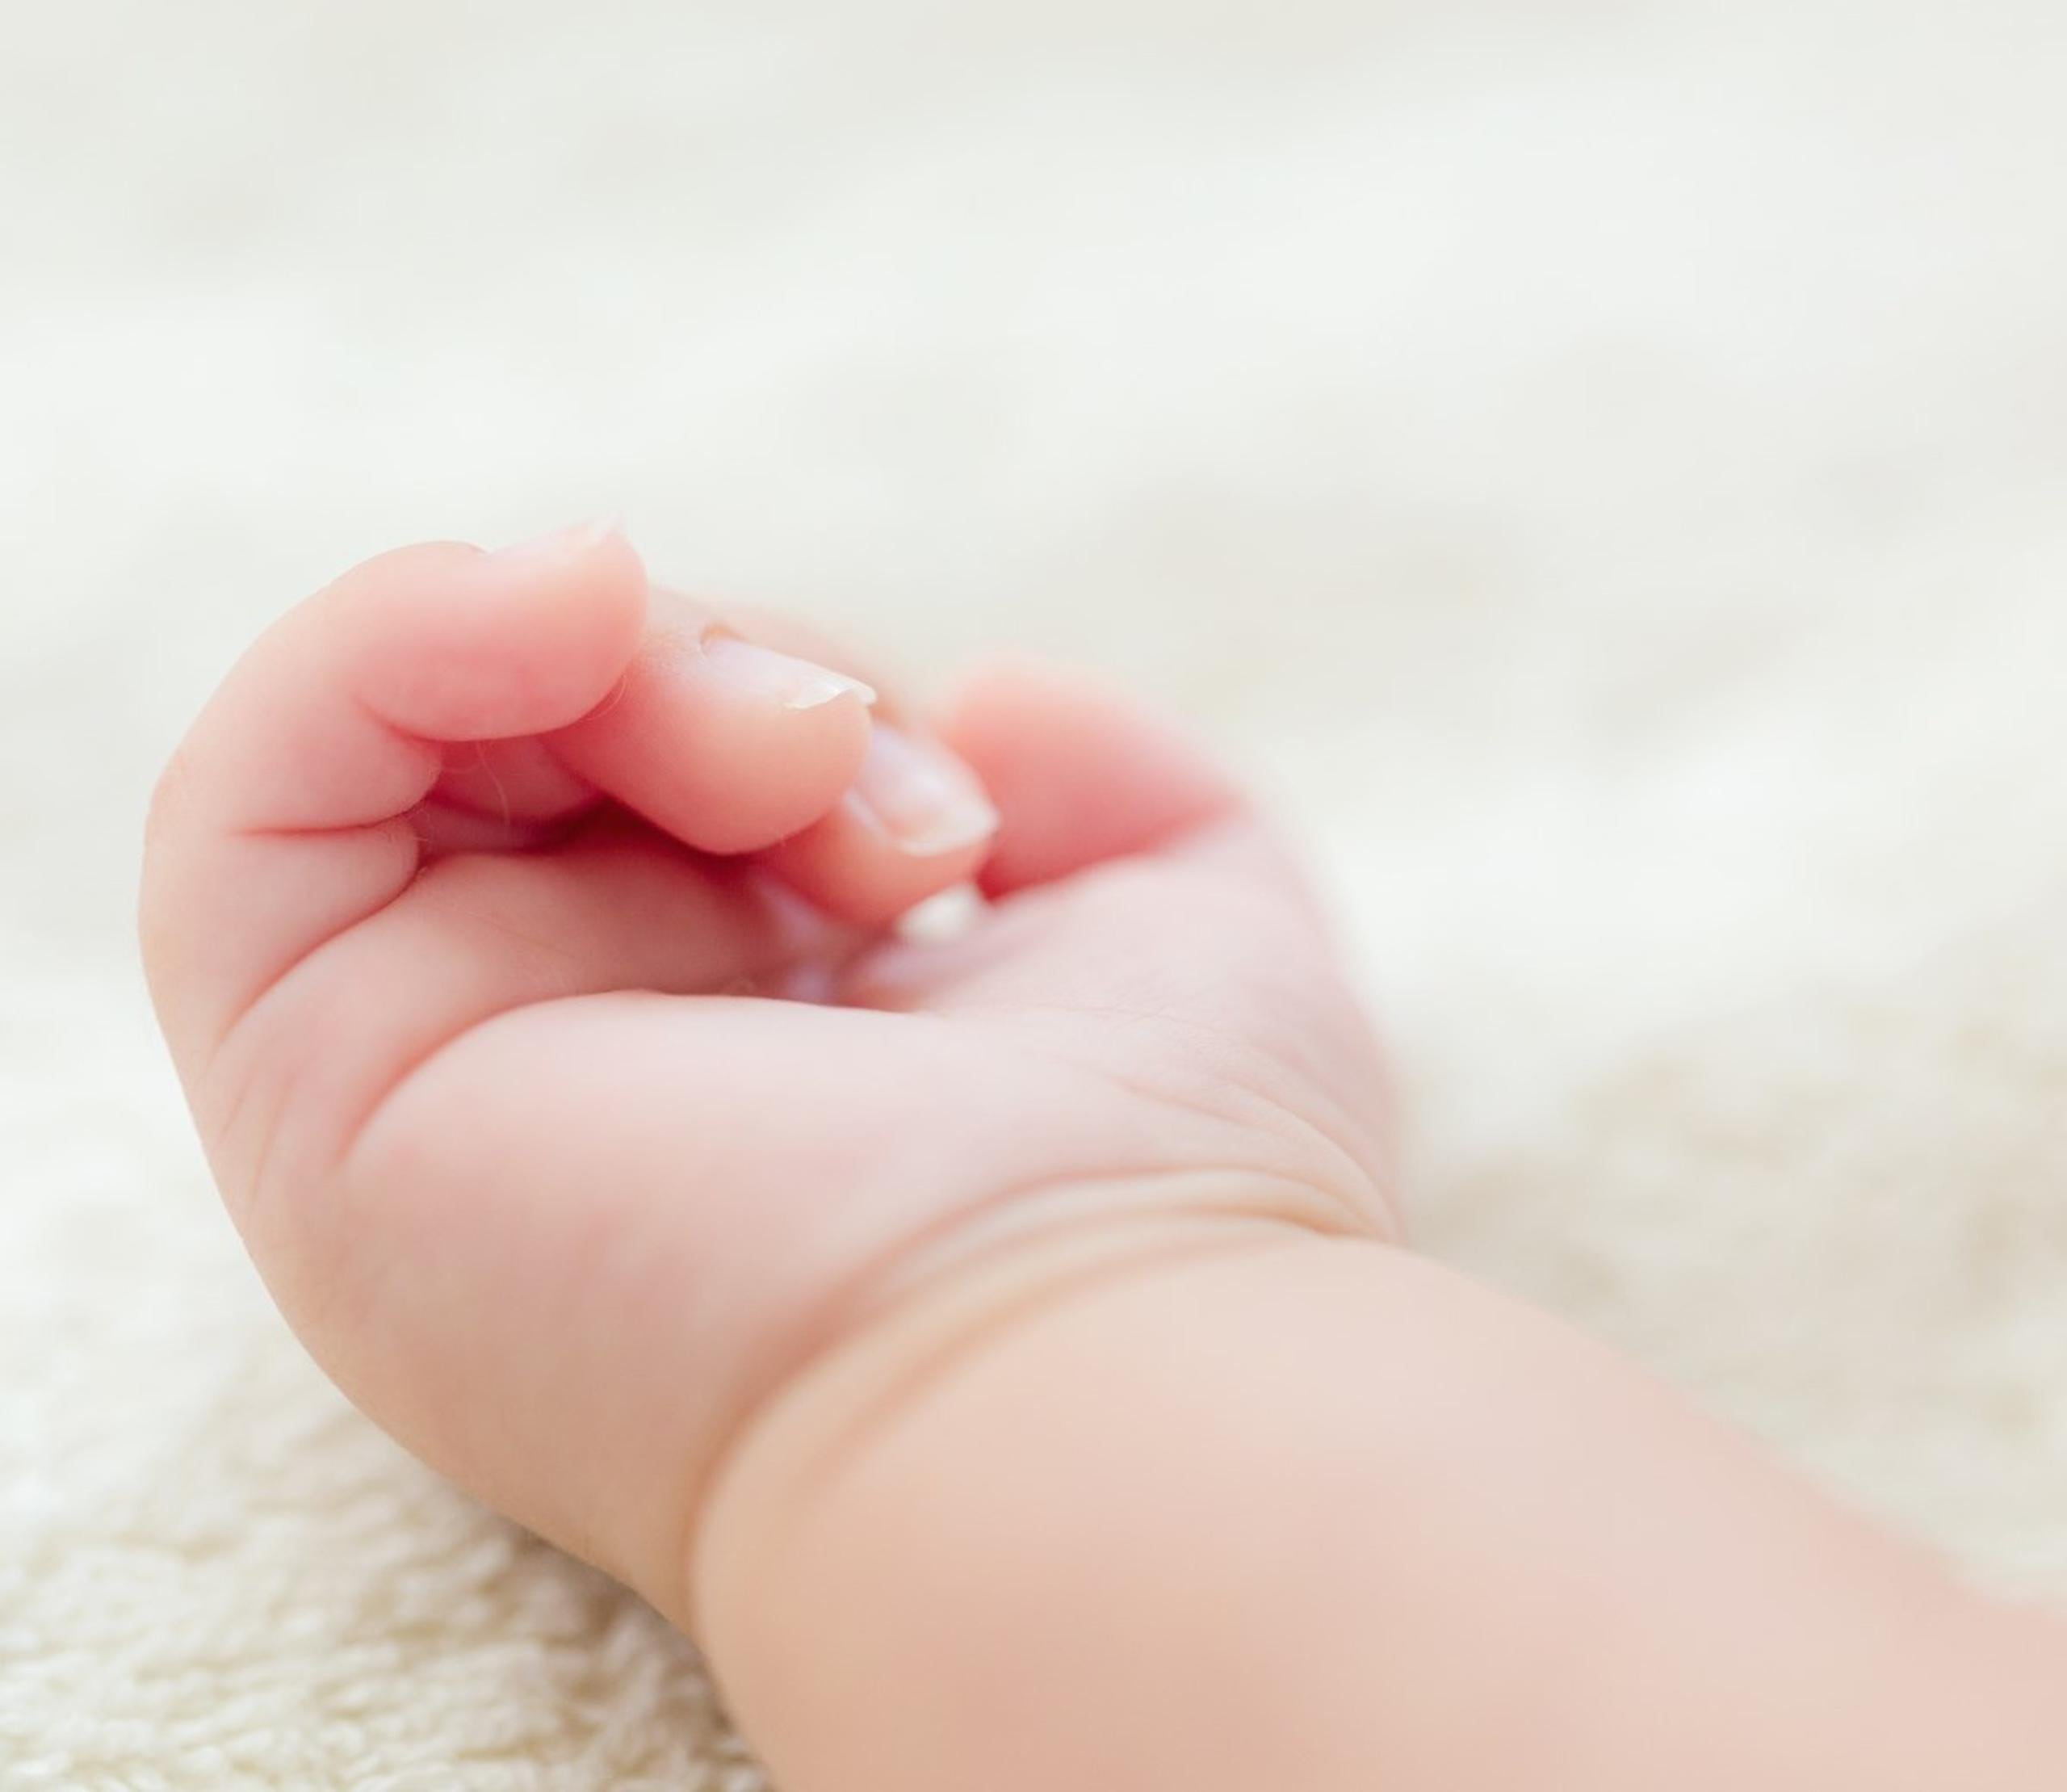 Mano de un bebé. (Shutterstock)